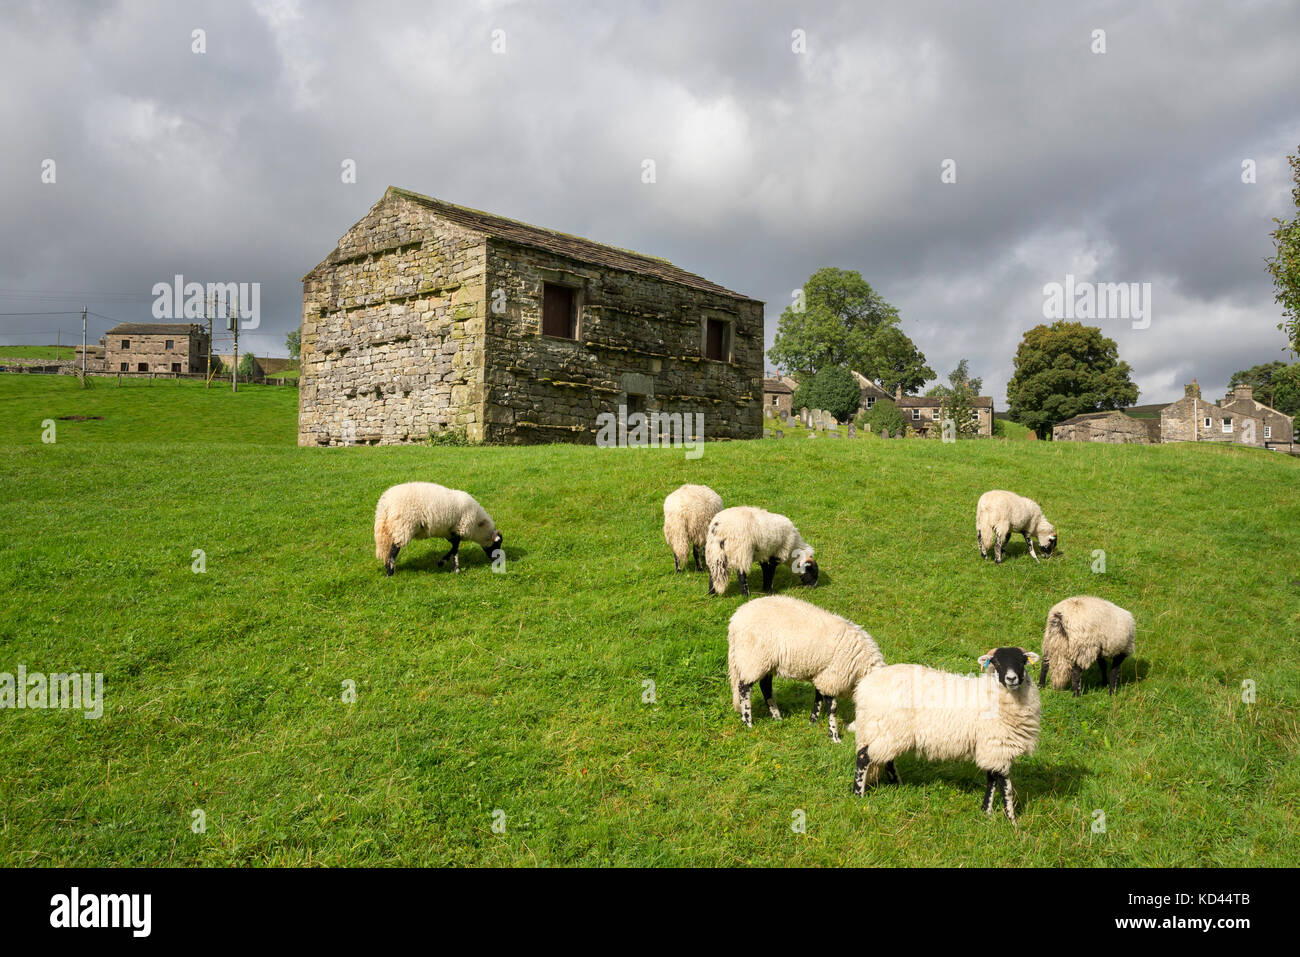 Pecore in un campo accanto a un tradizionale granaio in pietra nel villaggio di keld, Yorkshire Dales, Inghilterra. Foto Stock